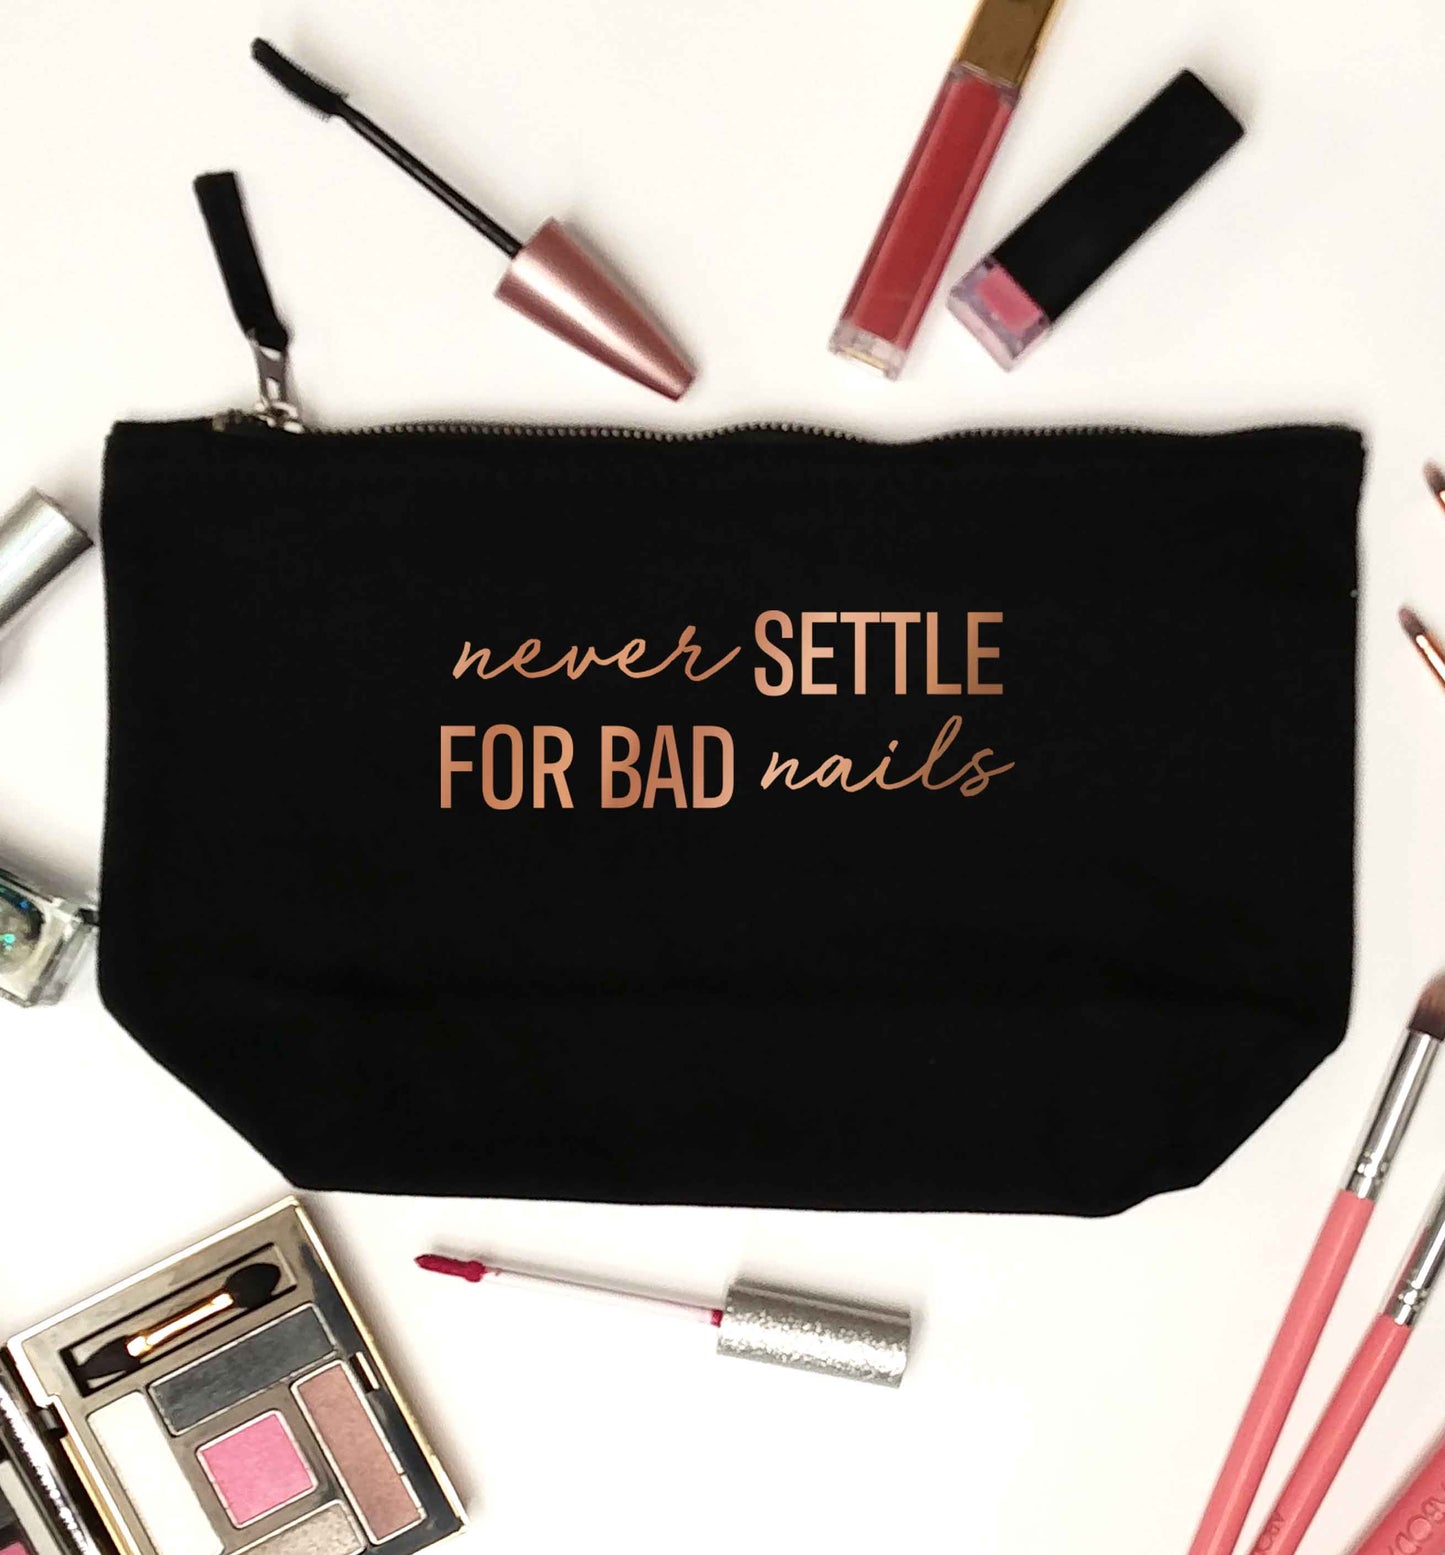 Never settle for bad nails - rose gold black makeup bag